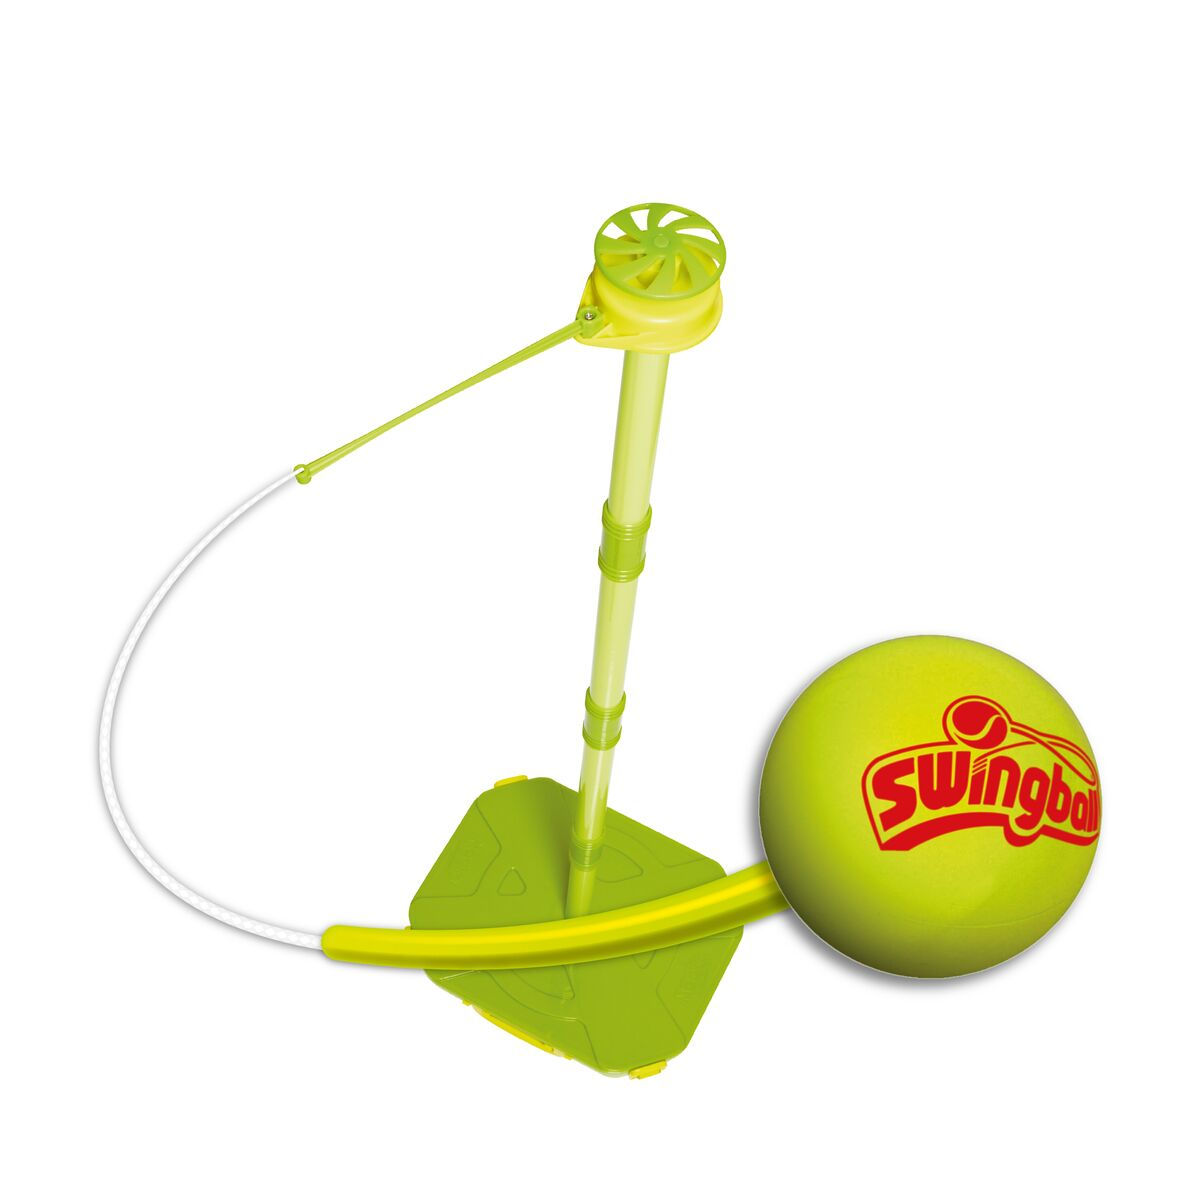 Mk7247 Early Fun Swing Ball, Lime Green & Yellow